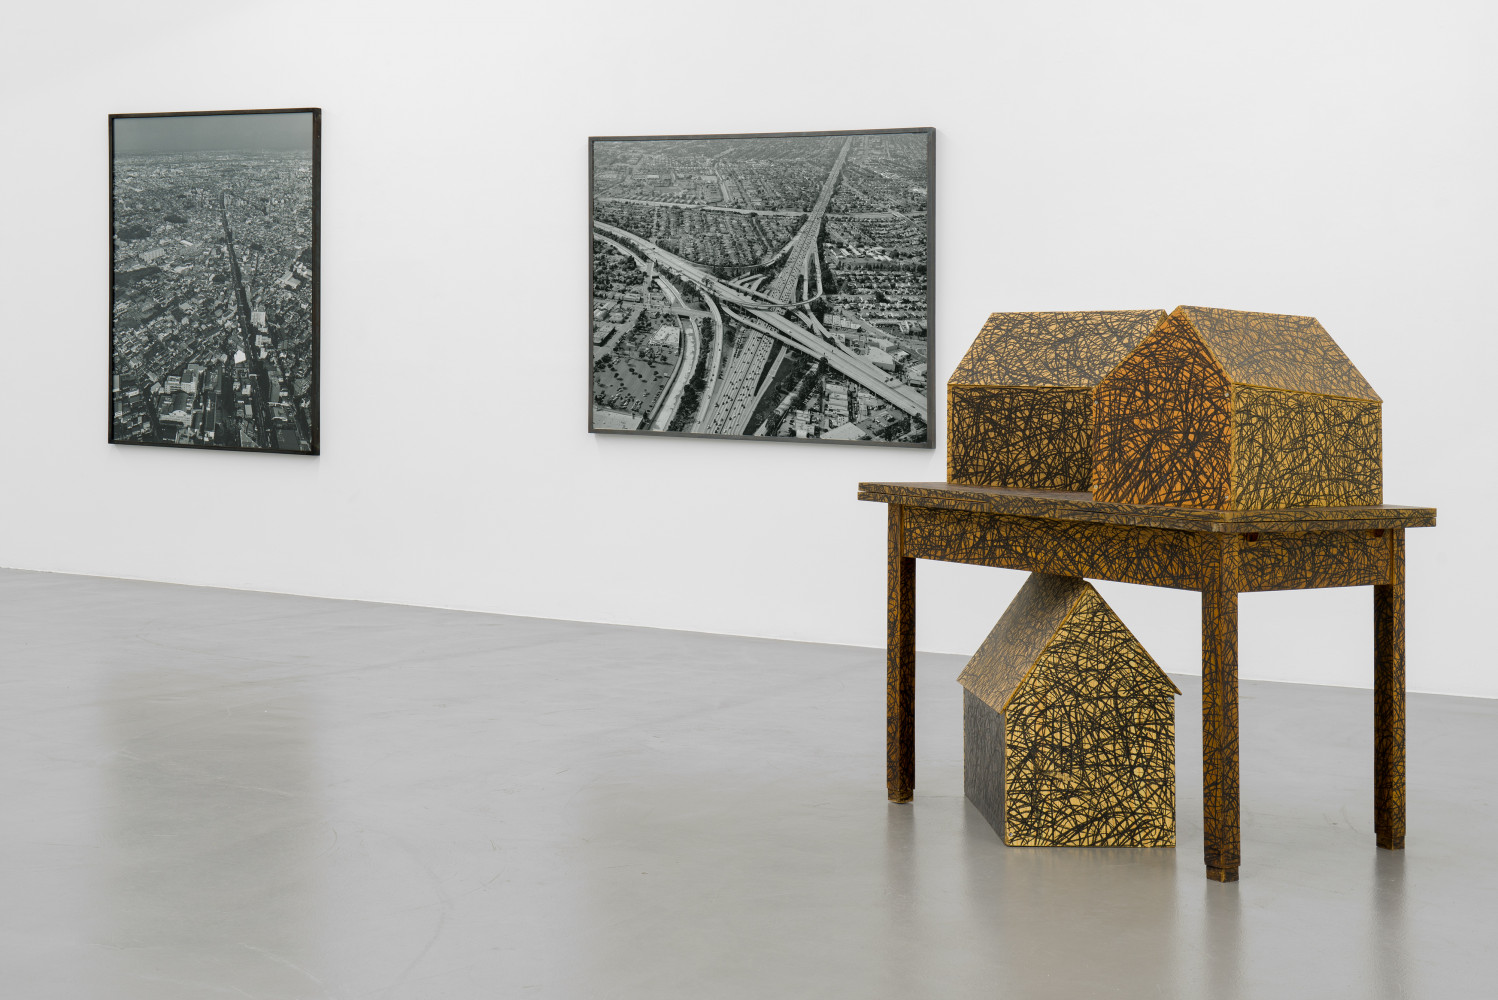 Installation view, Buchmann Galerie, 2019